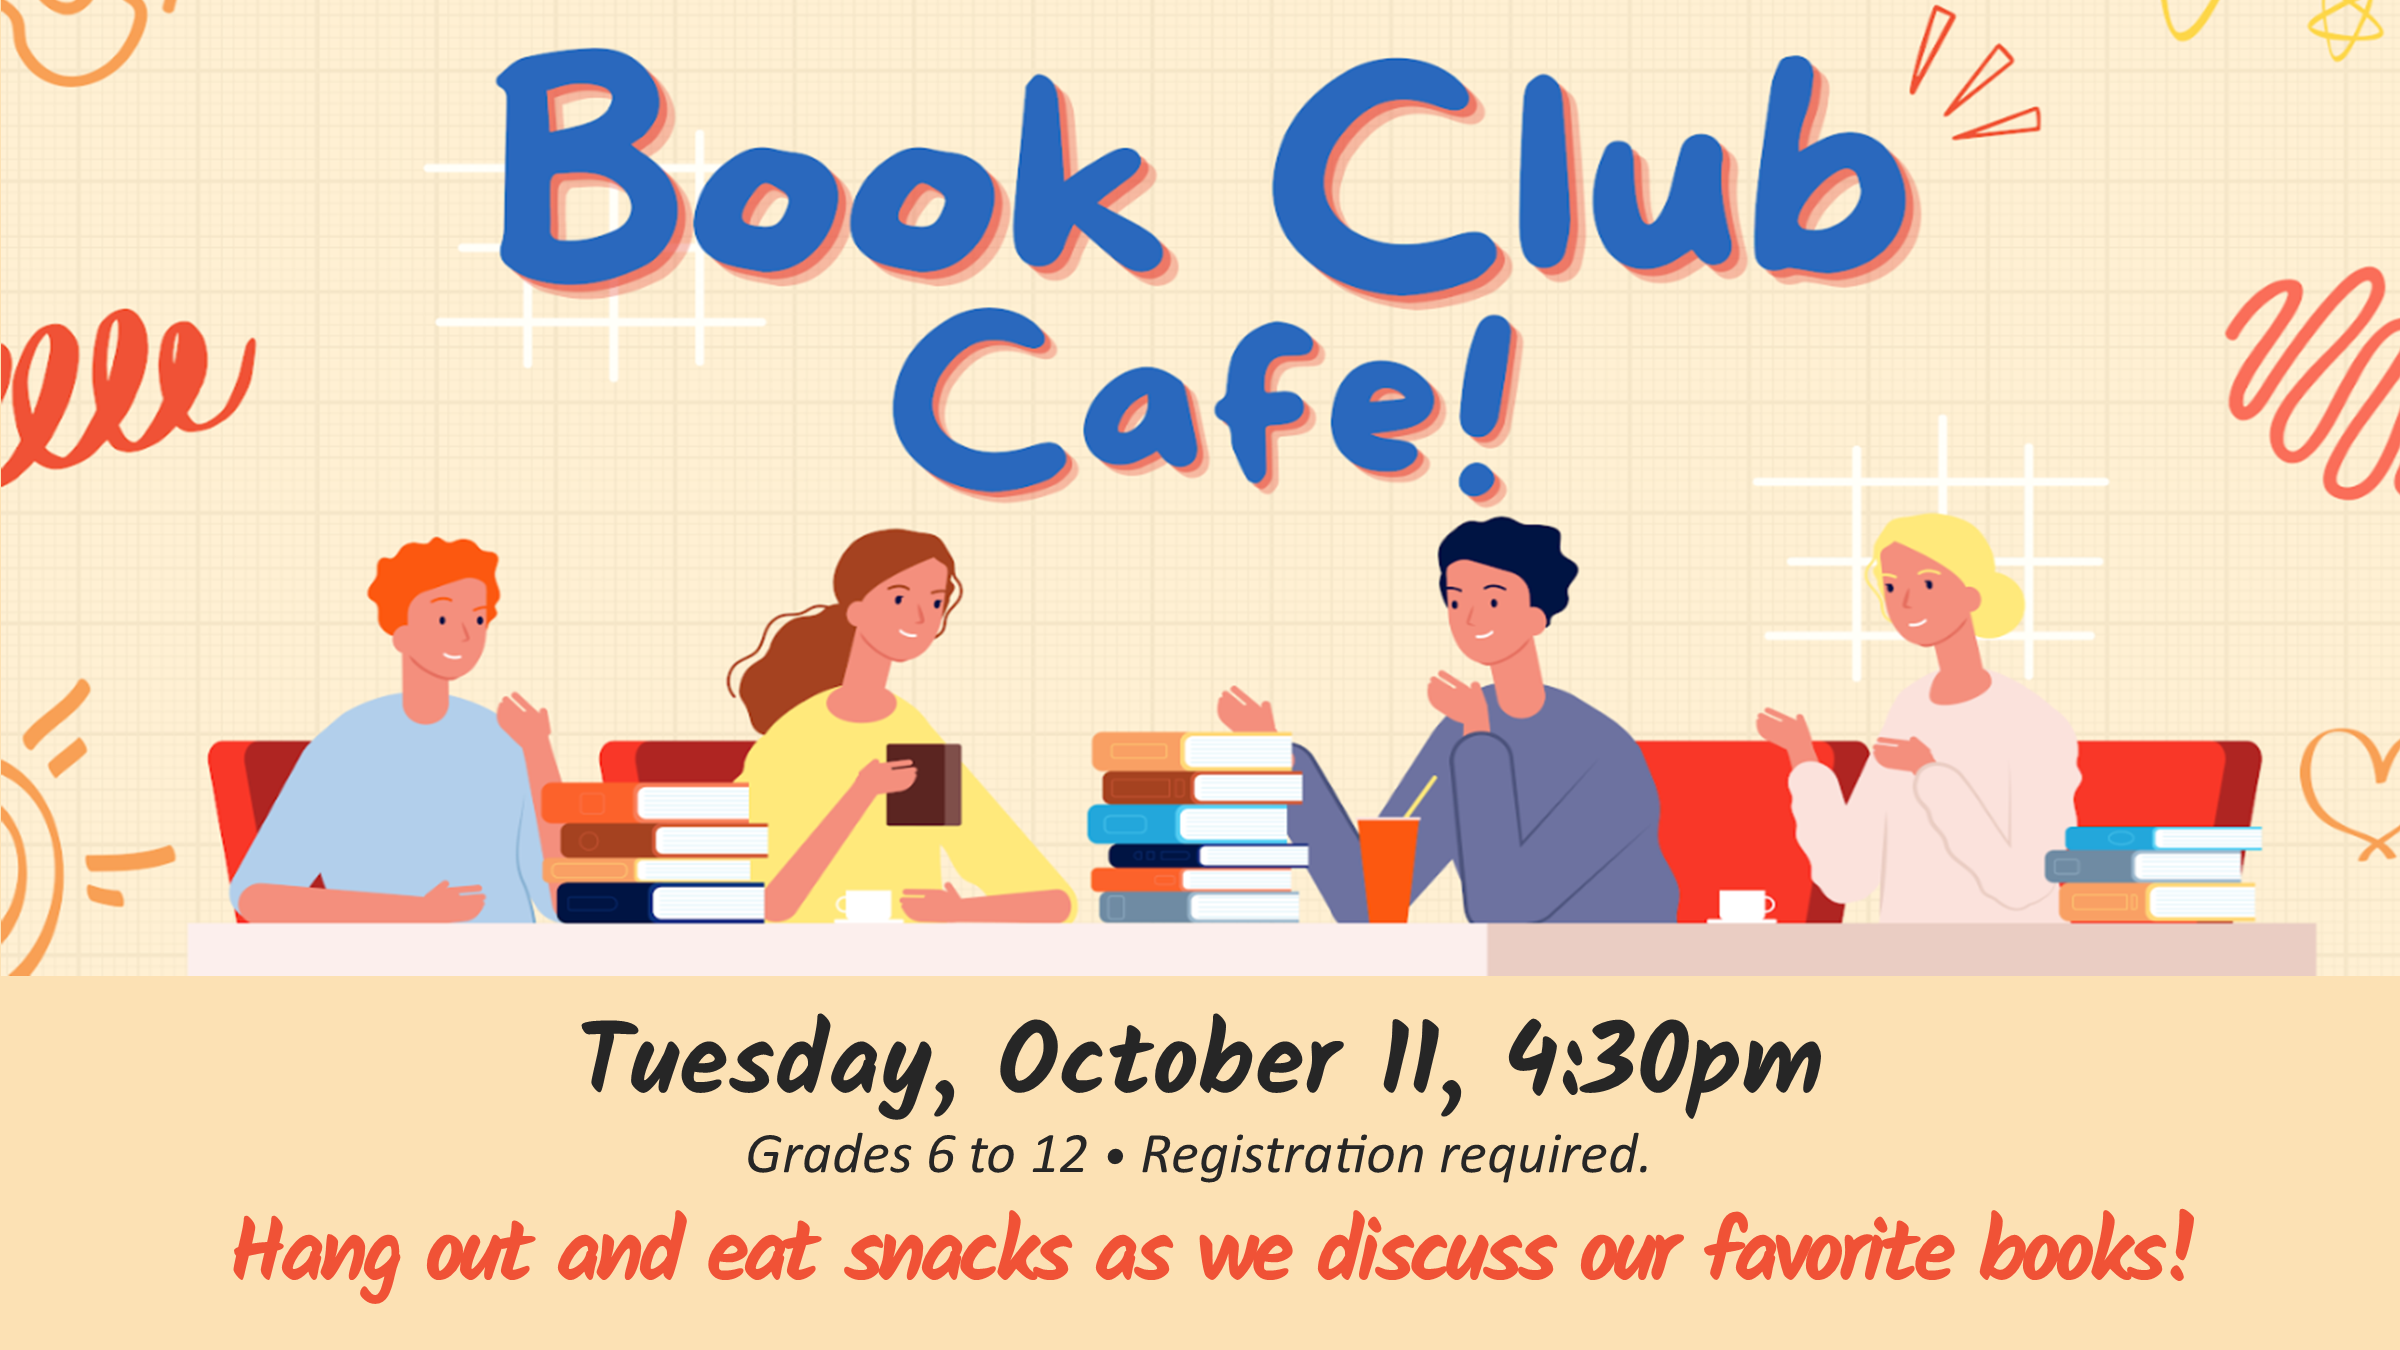 Teen Book Club Café